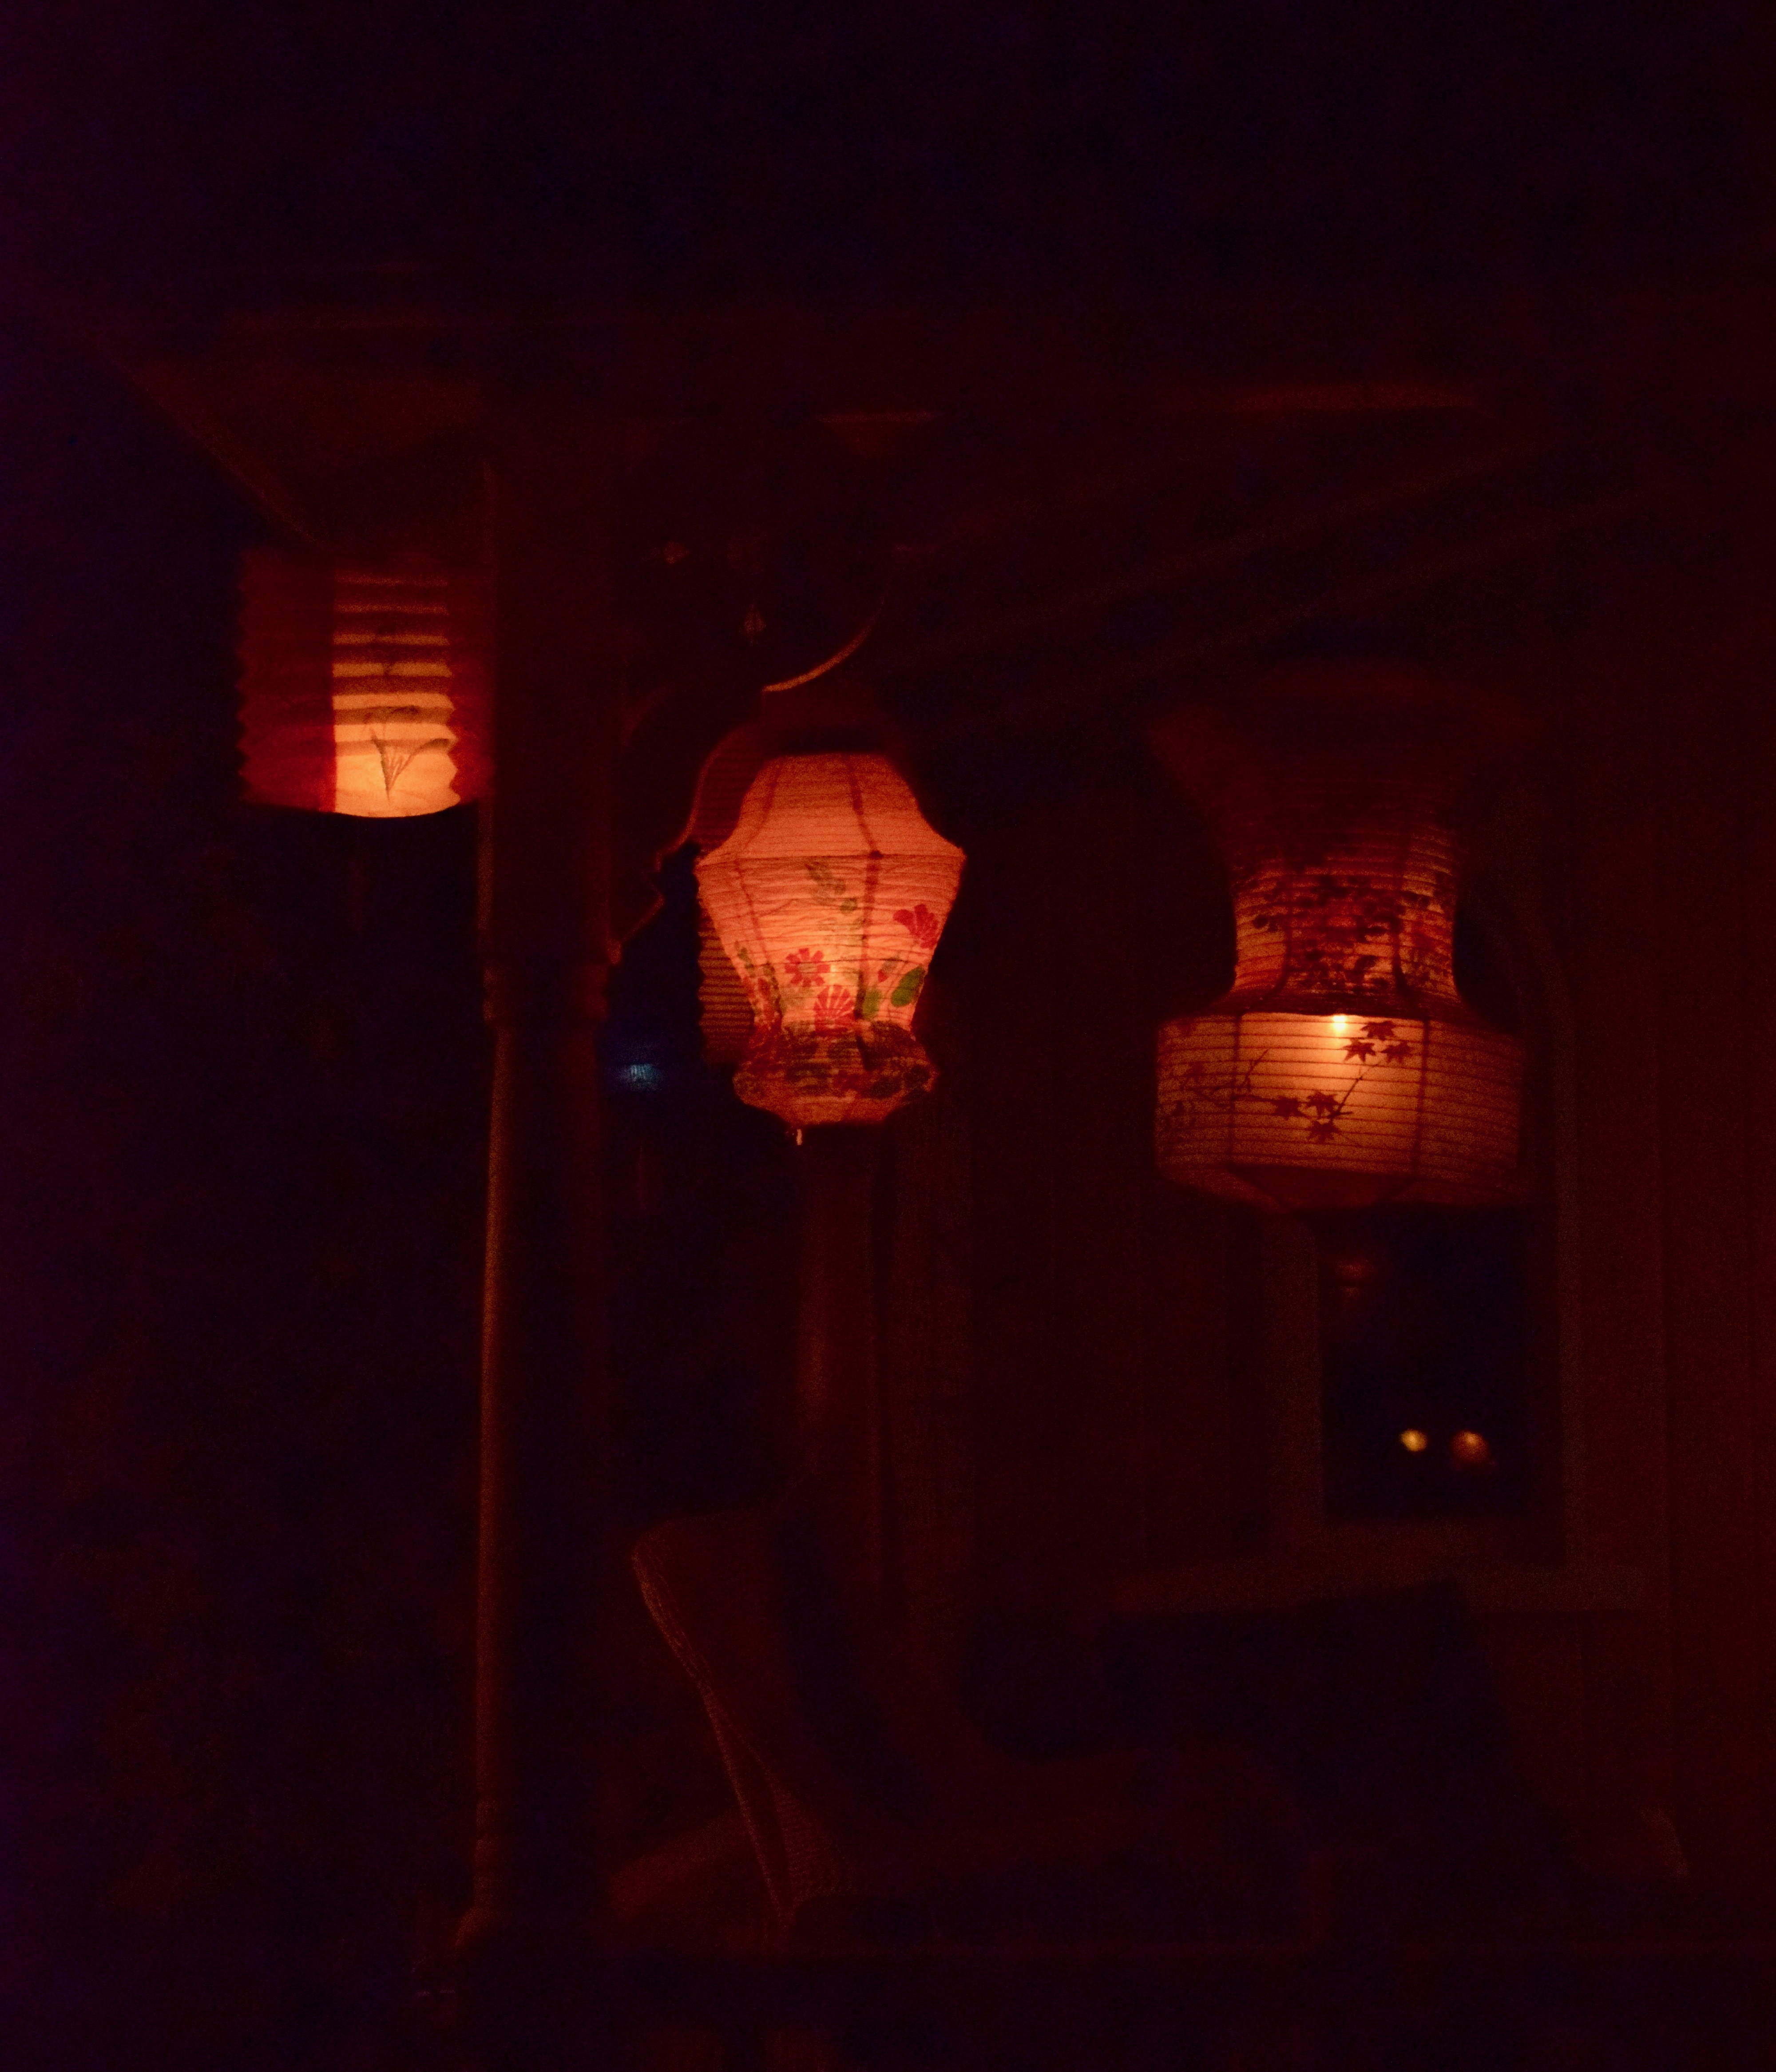 Illumination Night on Martha's Vineyard, Old Paper Lanterns